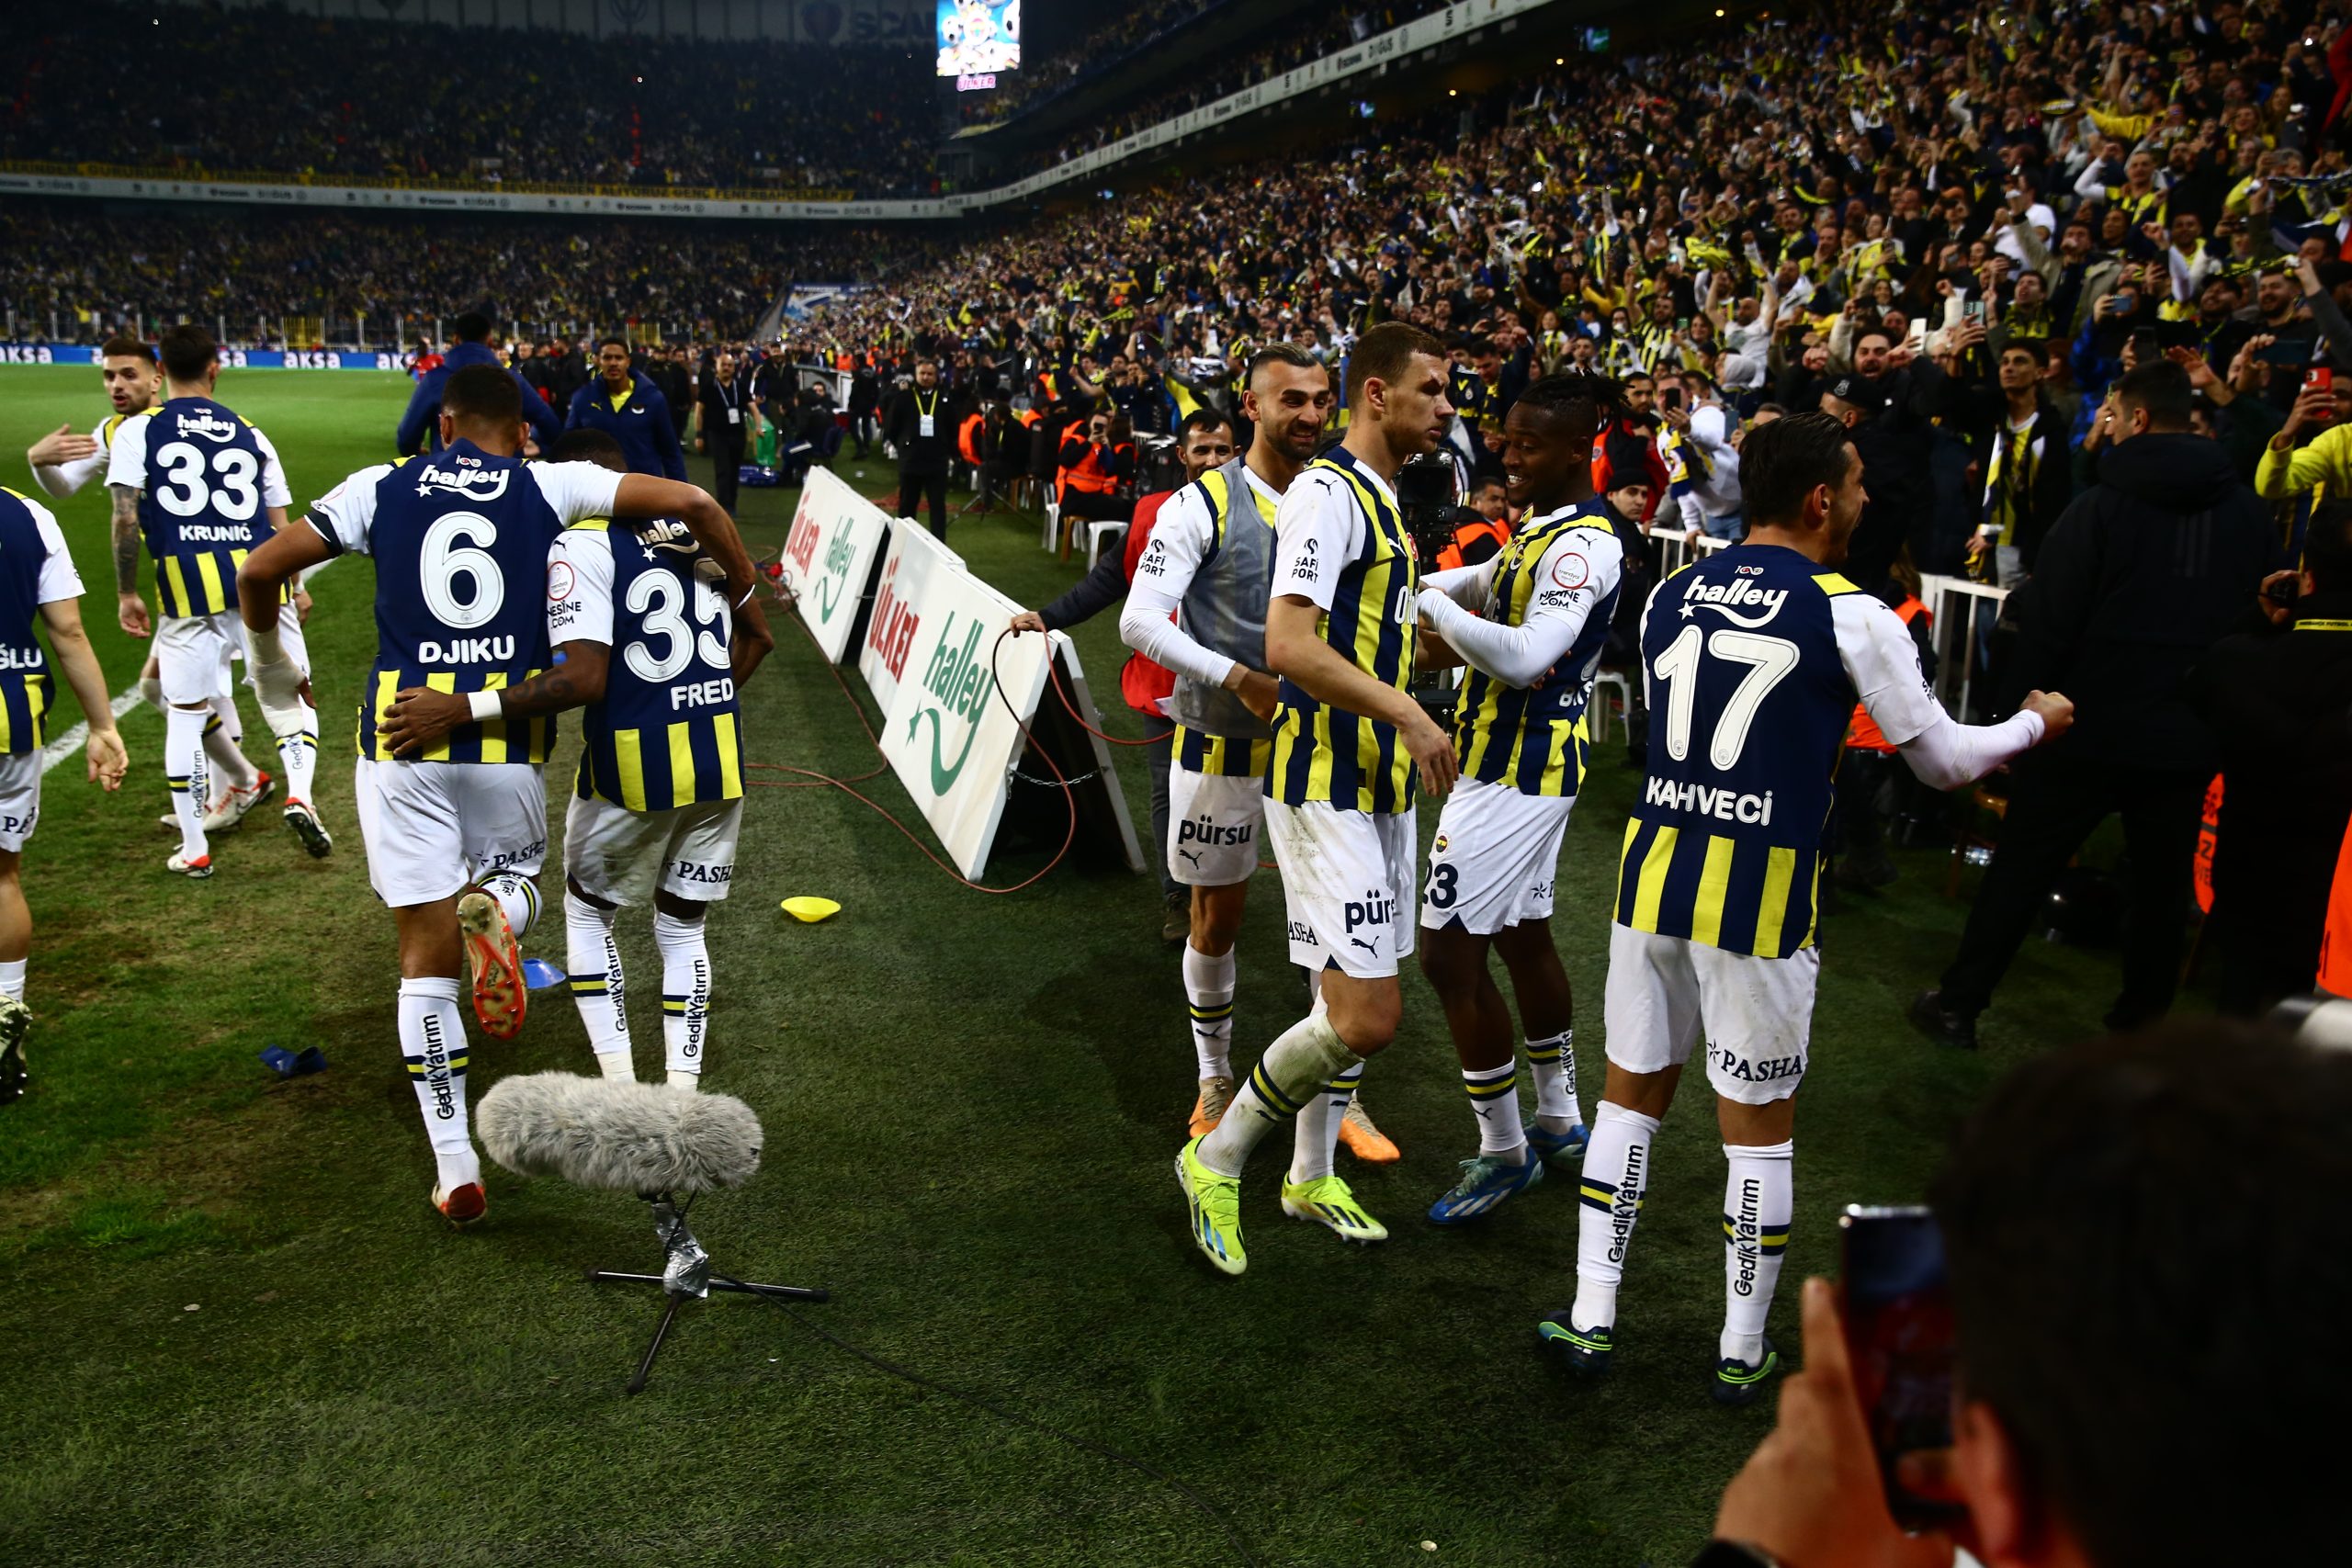 Fenerbahçe futbol takımında büyük tehlike; futbolcular iki cephe oldu!